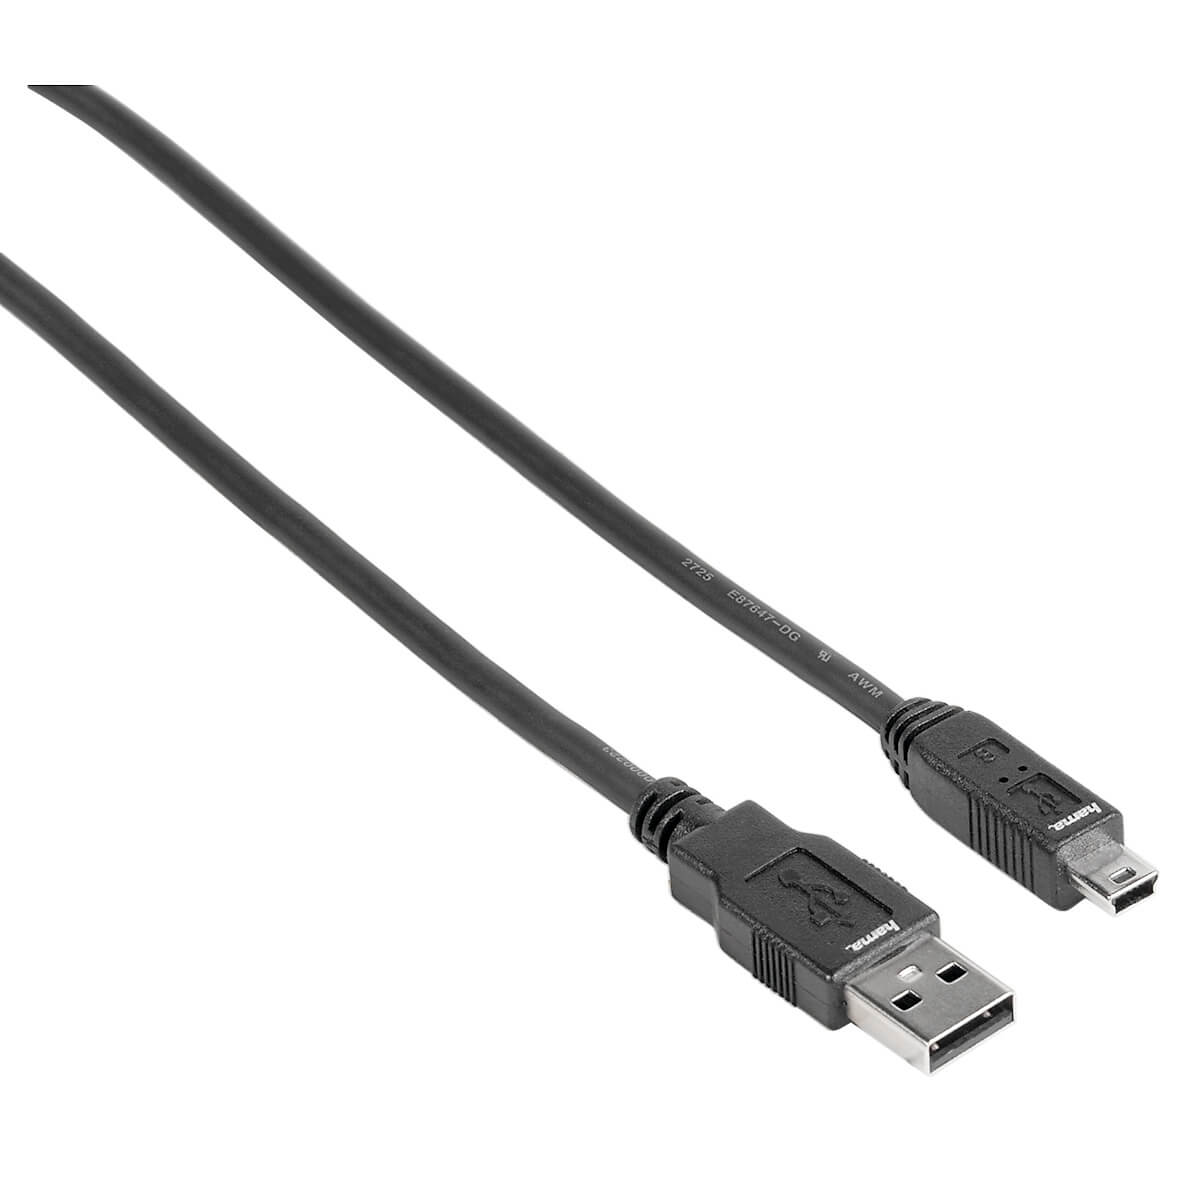 USB 2.0 Connection Cable, A p lug - mini-B plug (B5 Pin), 1.